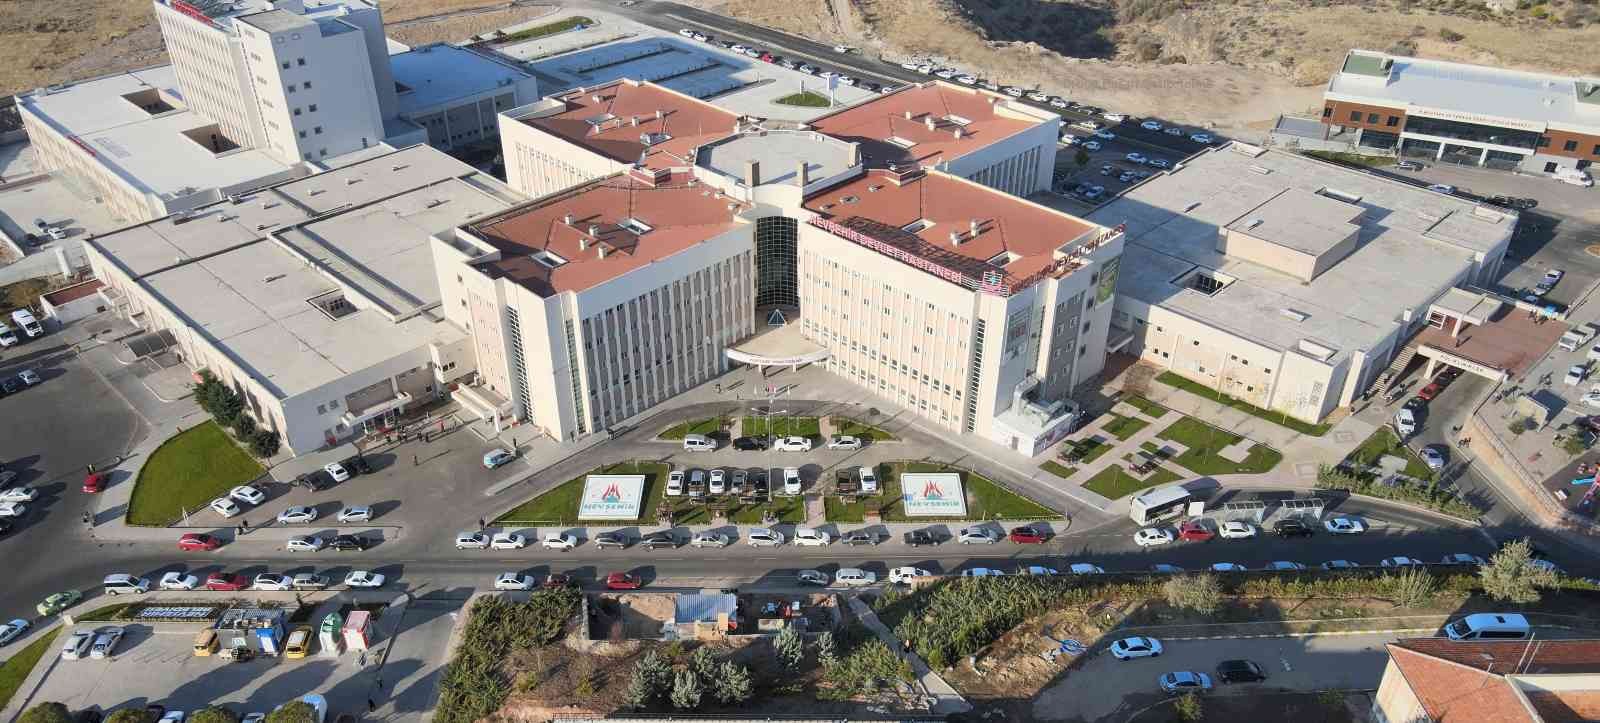 2021 yılında Nevşehir Devlet Hastanesi’nde 1 milyon üstünde hasta muayene oldu #nevsehir